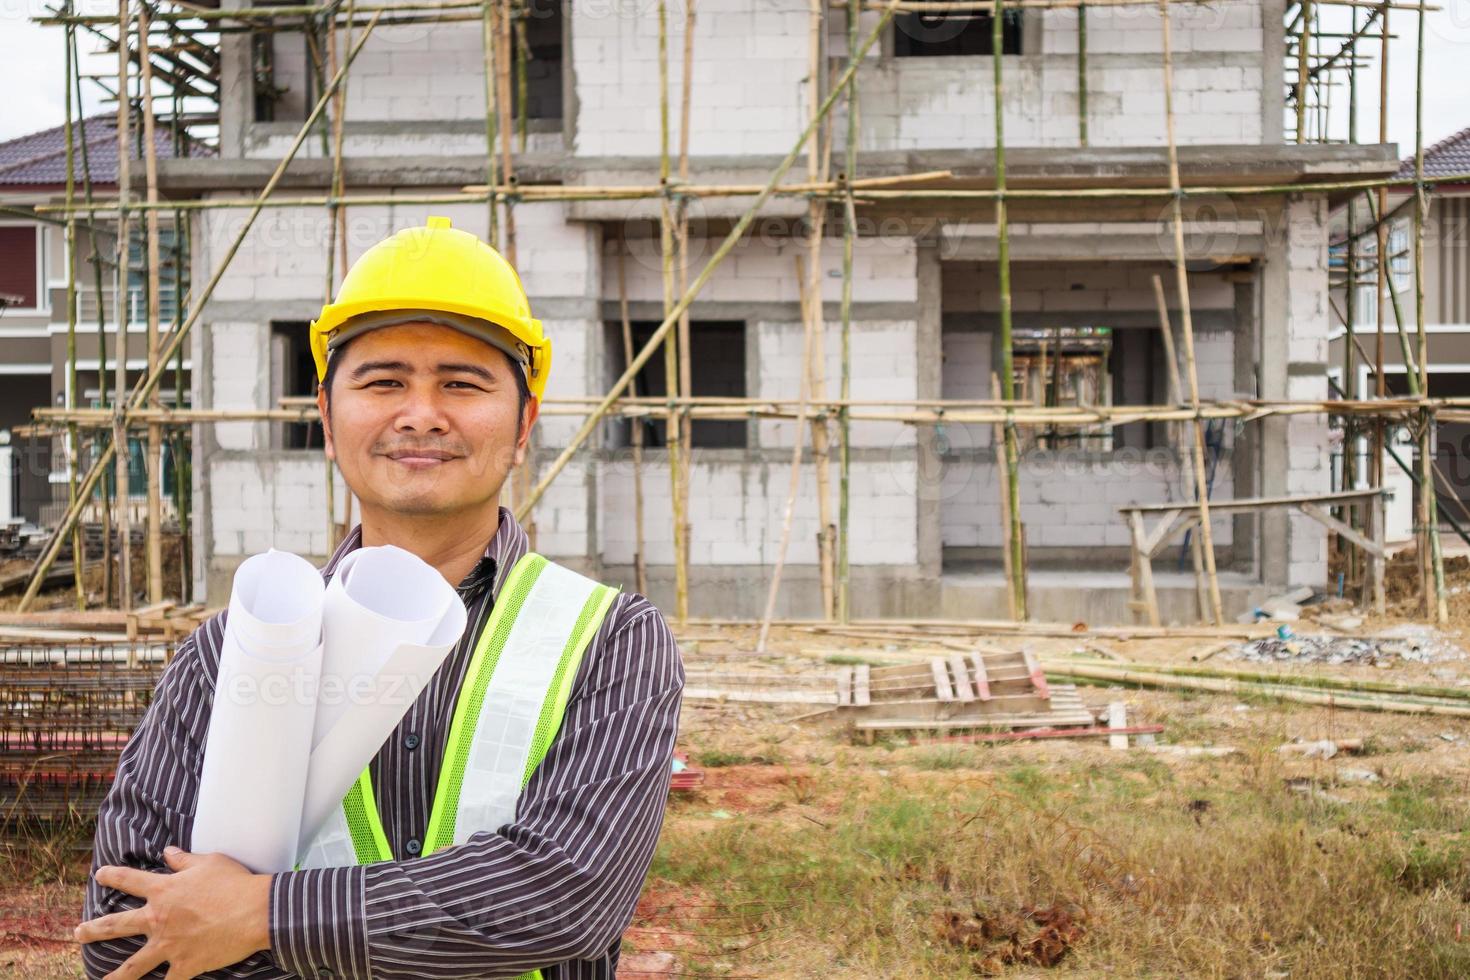 asiatisk affärsman byggnadsingenjör arbetare på husbyggarbetsplatsen foto